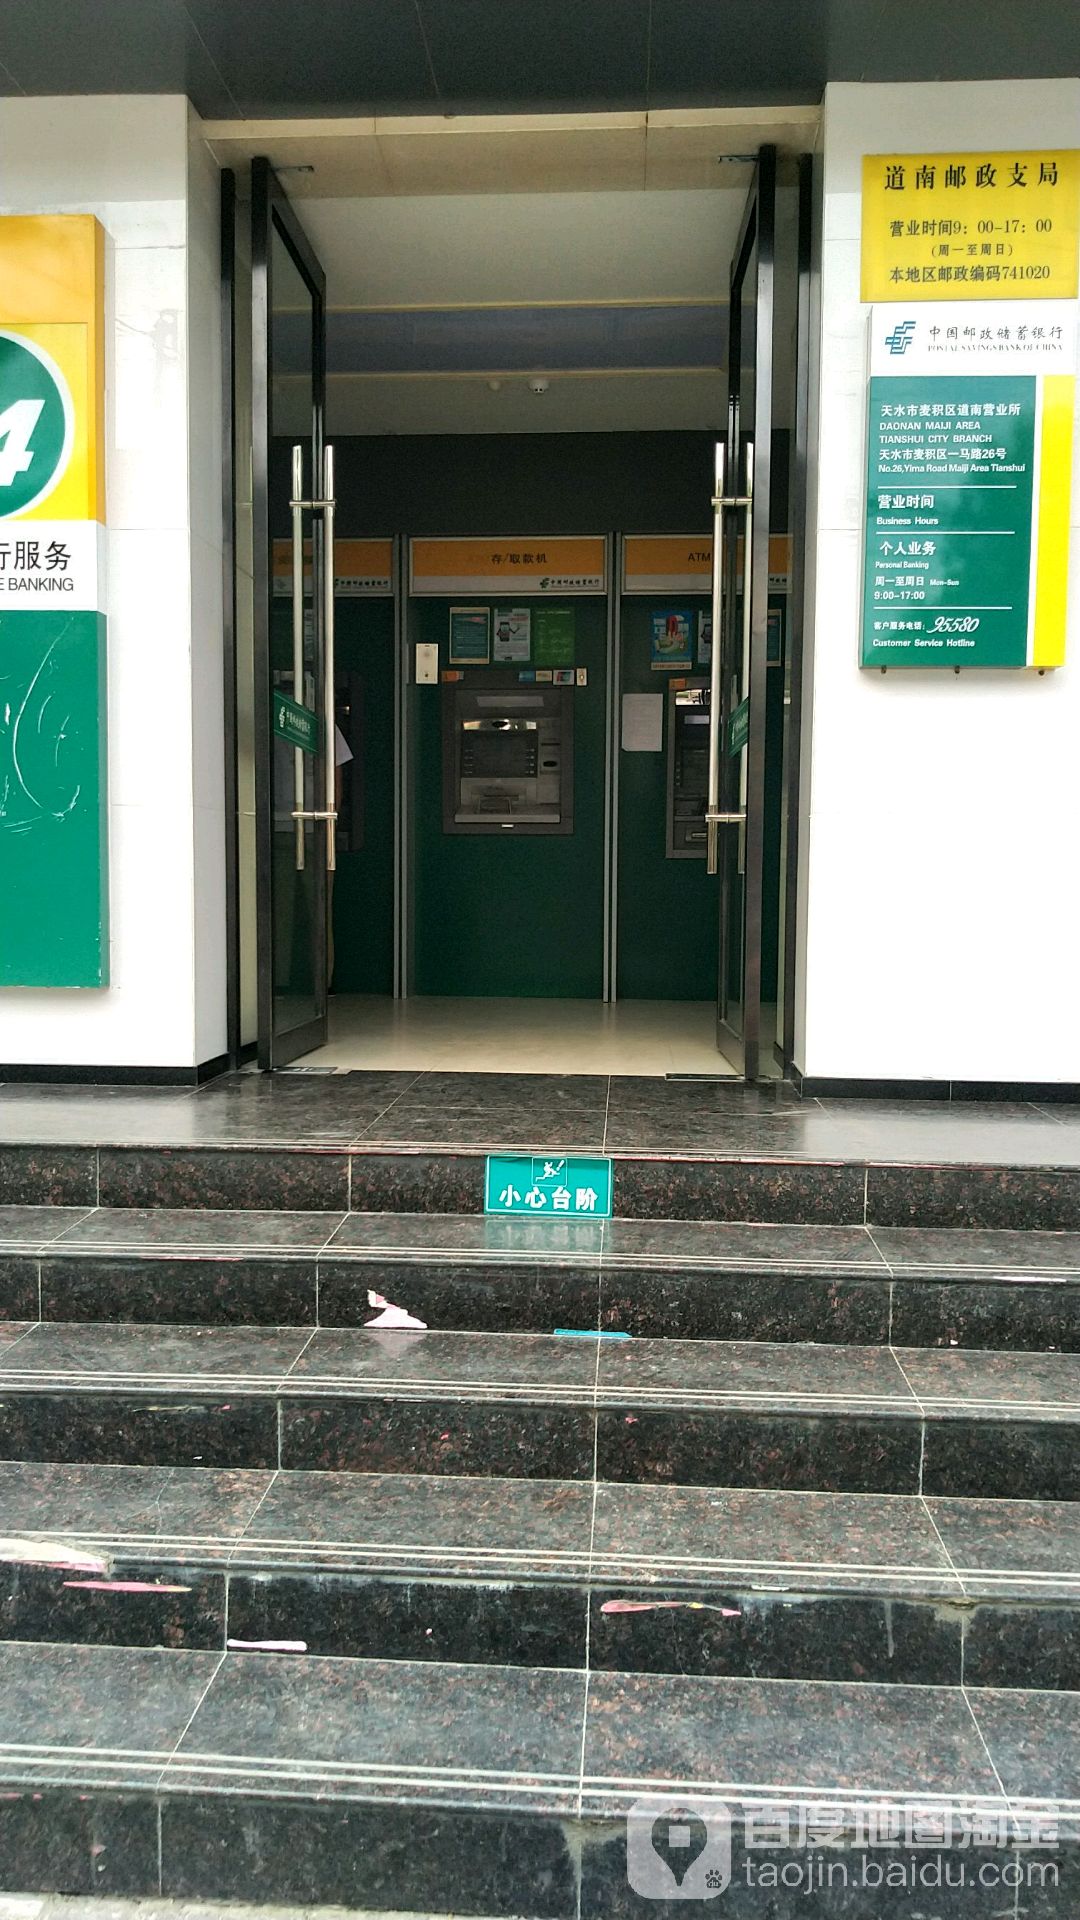 中國郵政儲蓄銀行24小時自助銀行(道南支行)